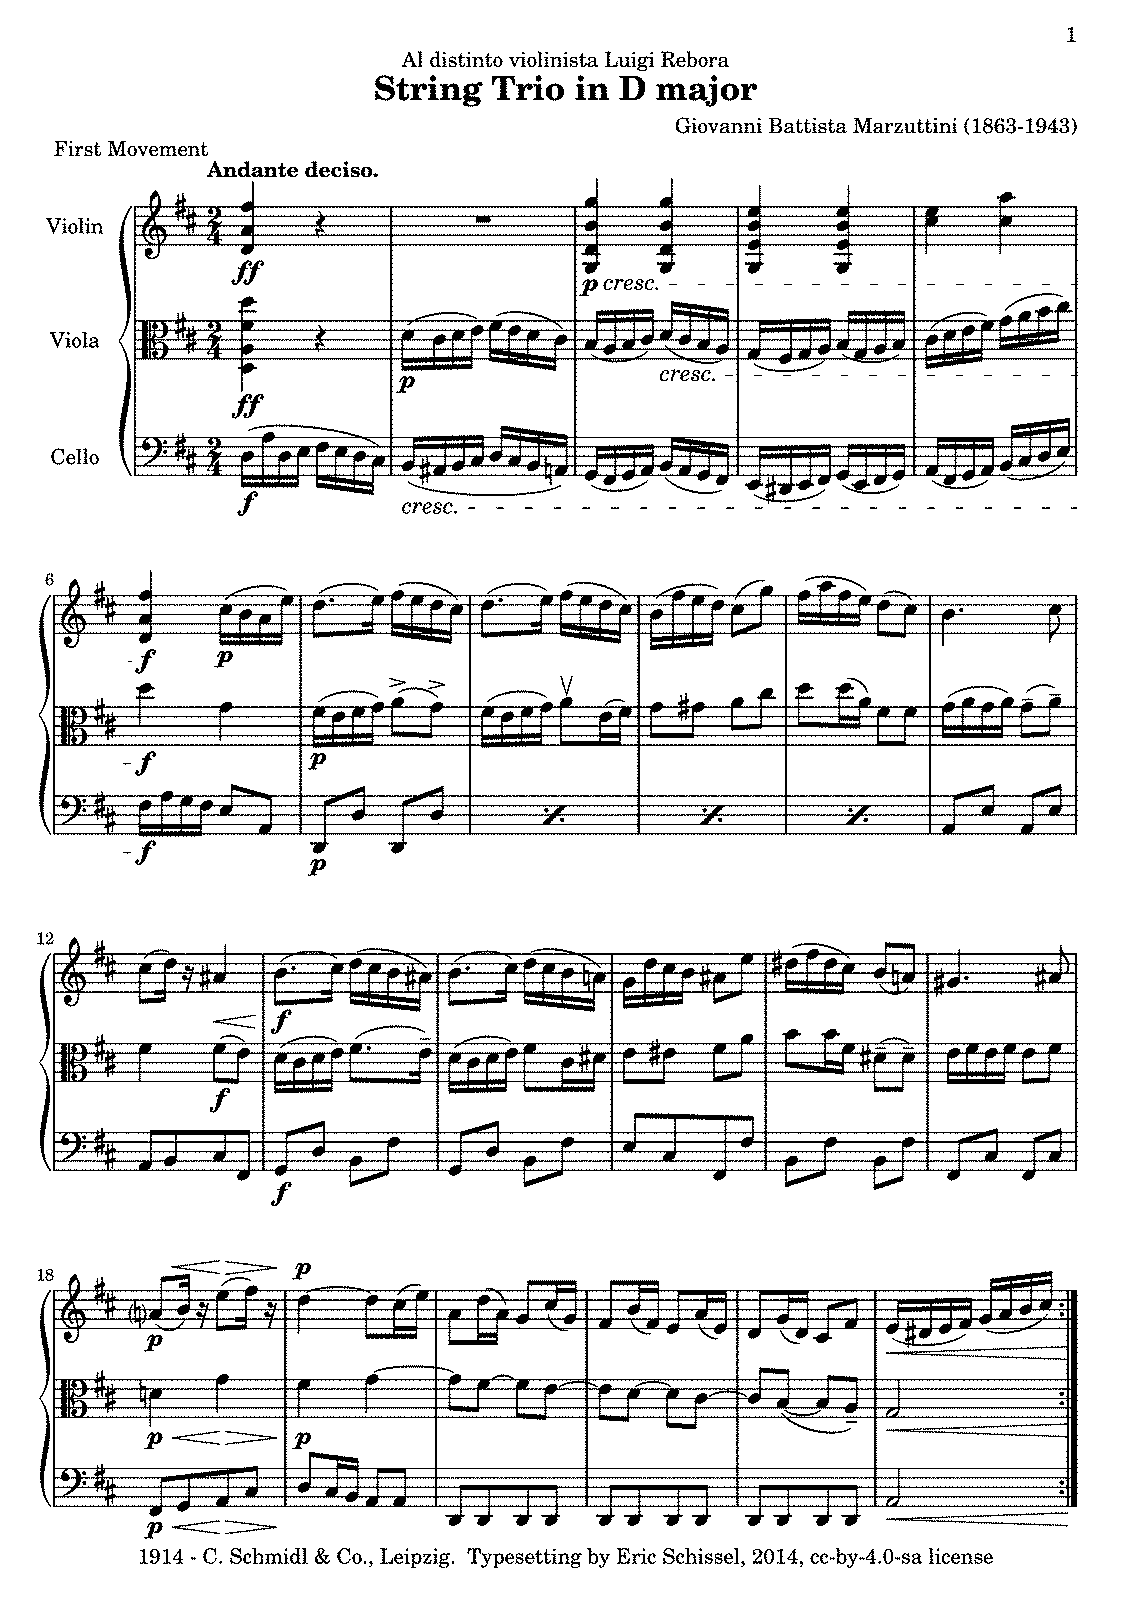 String Trio (Marzuttini, Giovanni Battista) - IMSLP